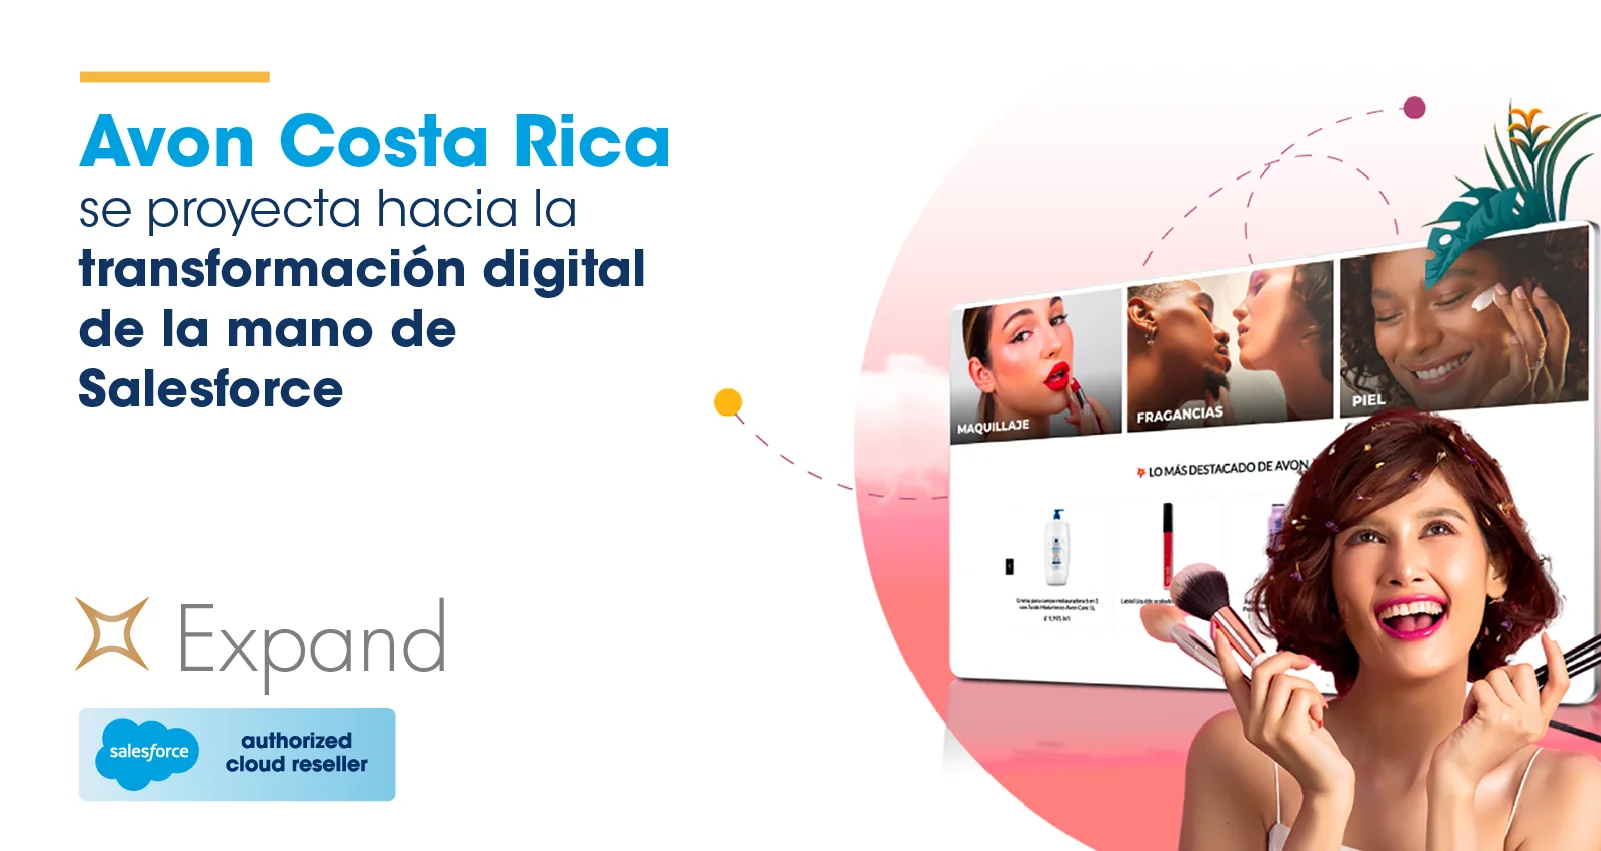 Avon Costa Rica se proyecta hacia la transformación digital de la mano de Salesforce